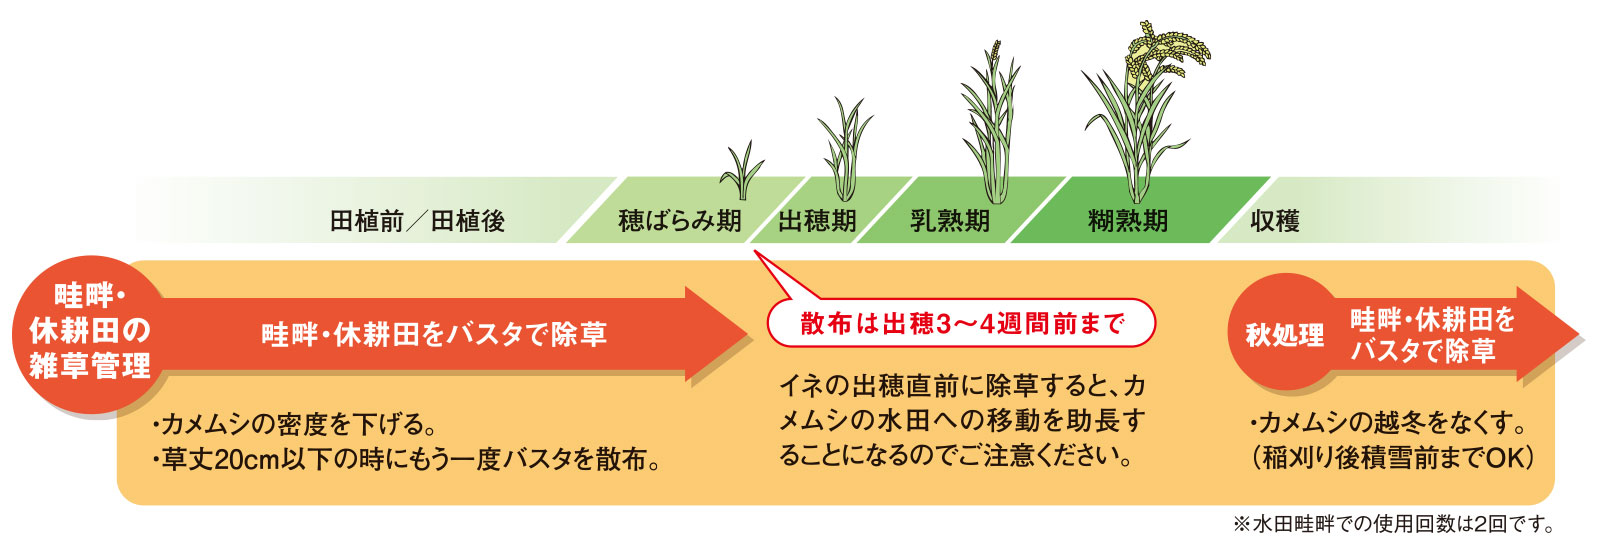 カメムシによる斑点米を防ぐための散布時期